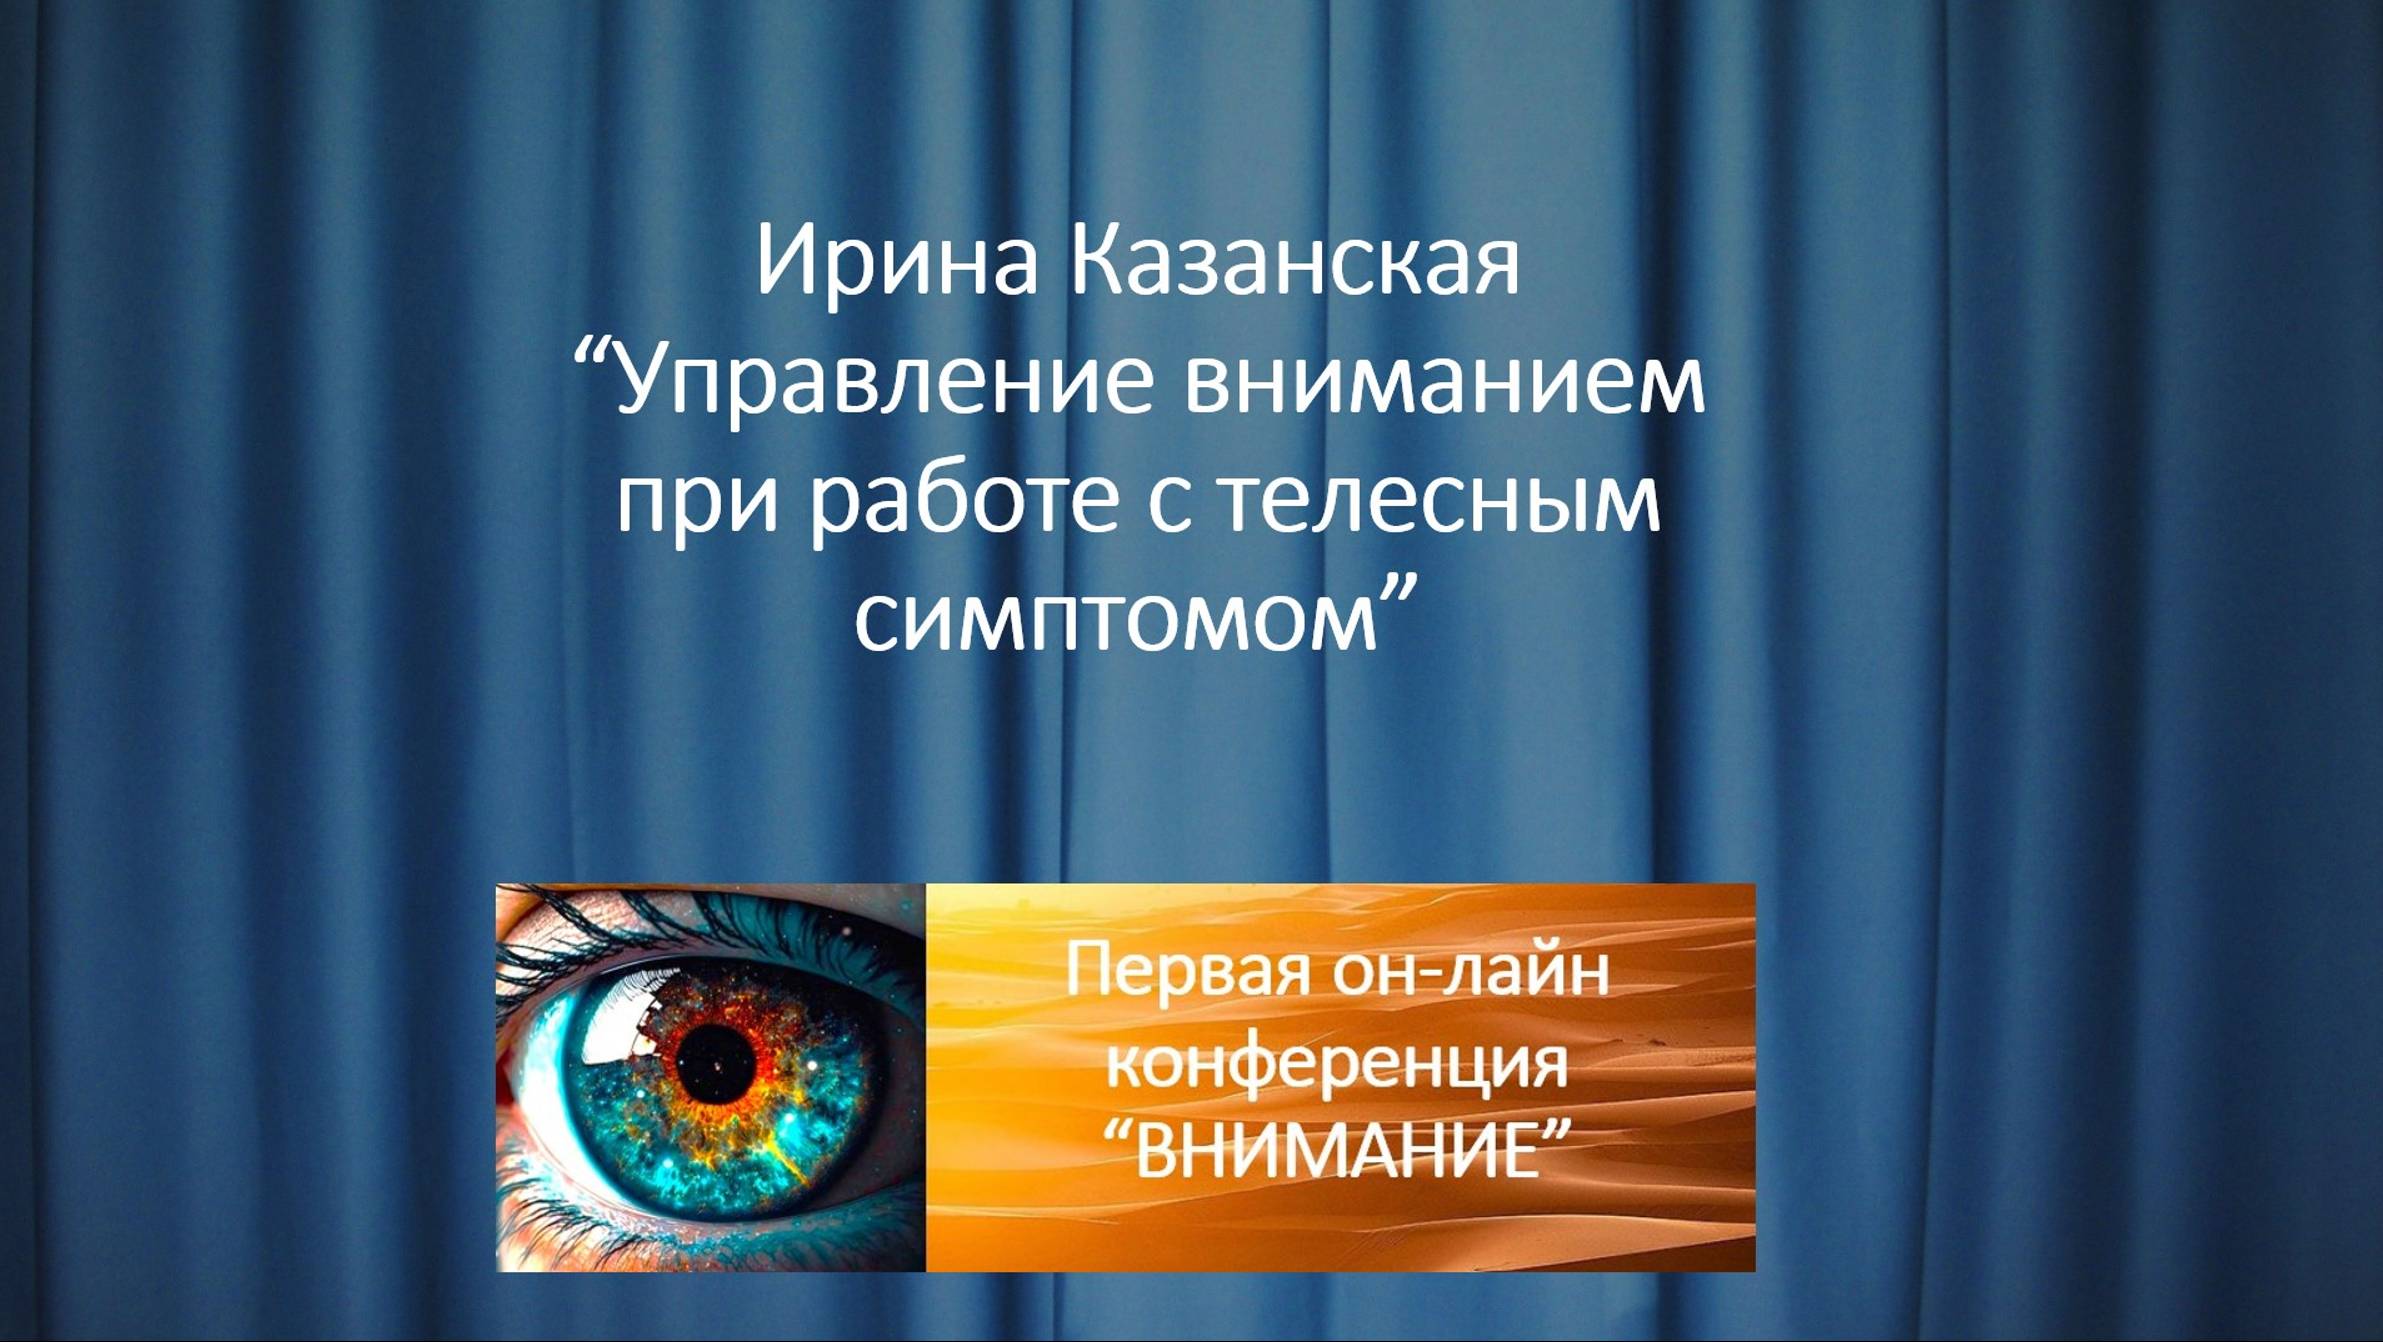 Ирина Казанская  “Управление вниманием при работе с телесным симптомом”